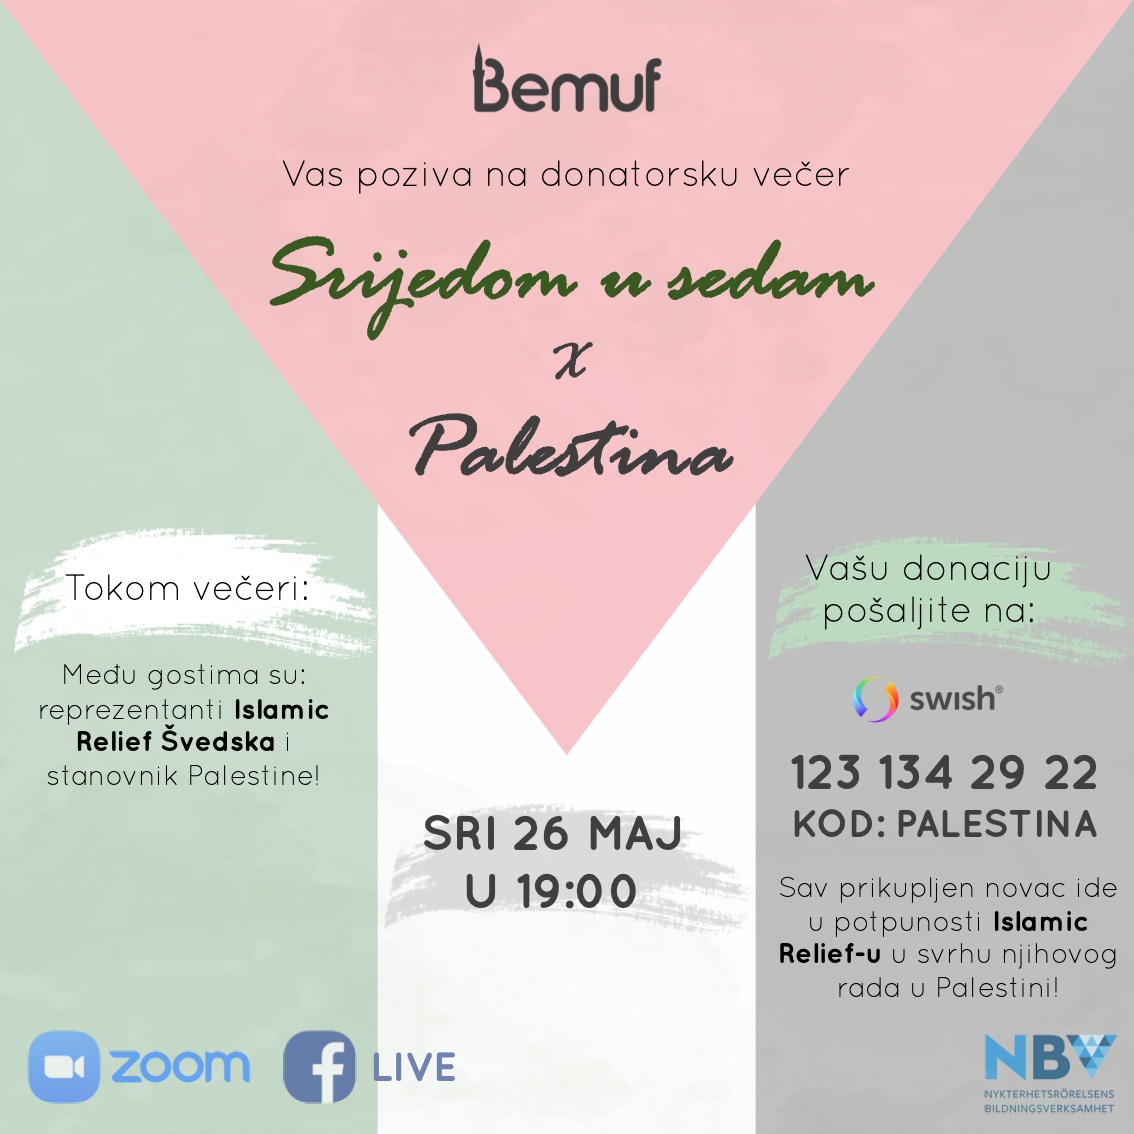 Bemufova akcija za Palestinu